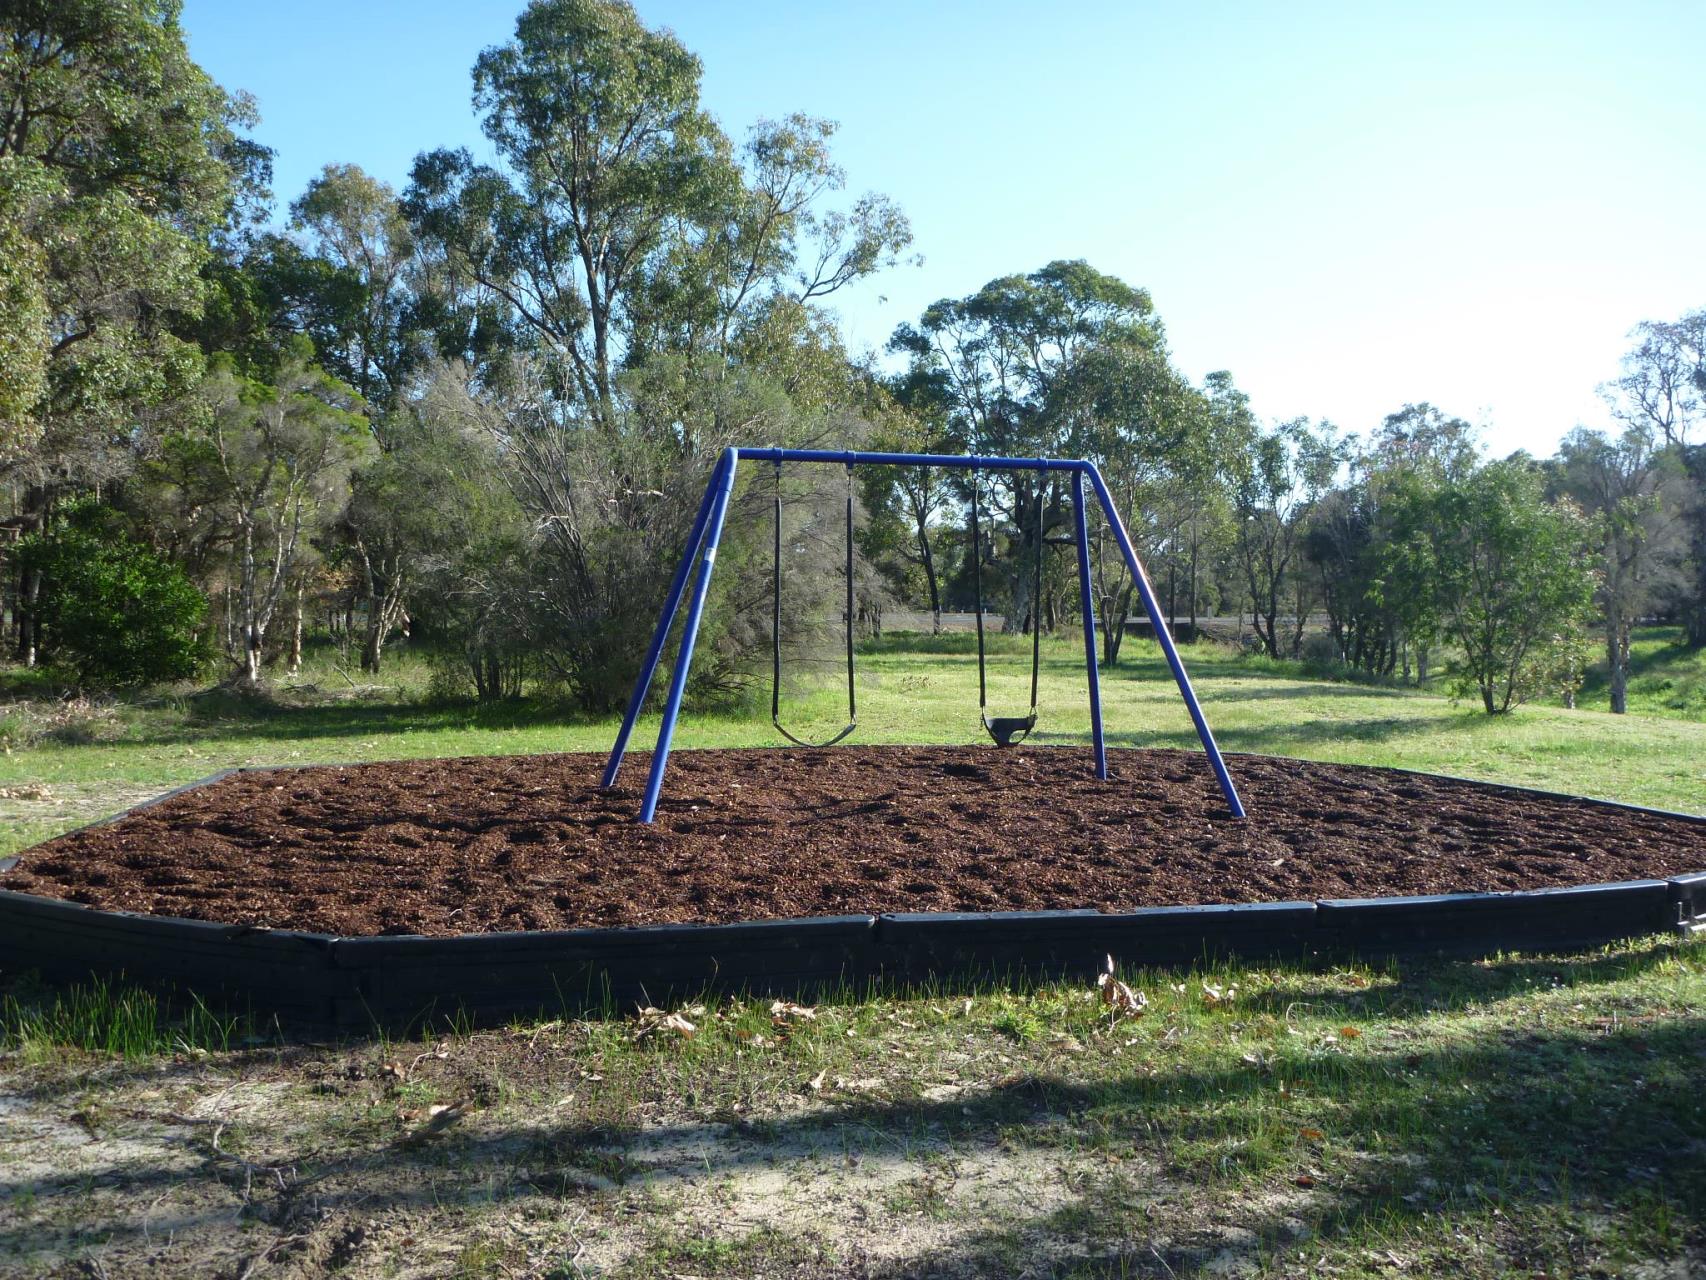 Swing set in open park